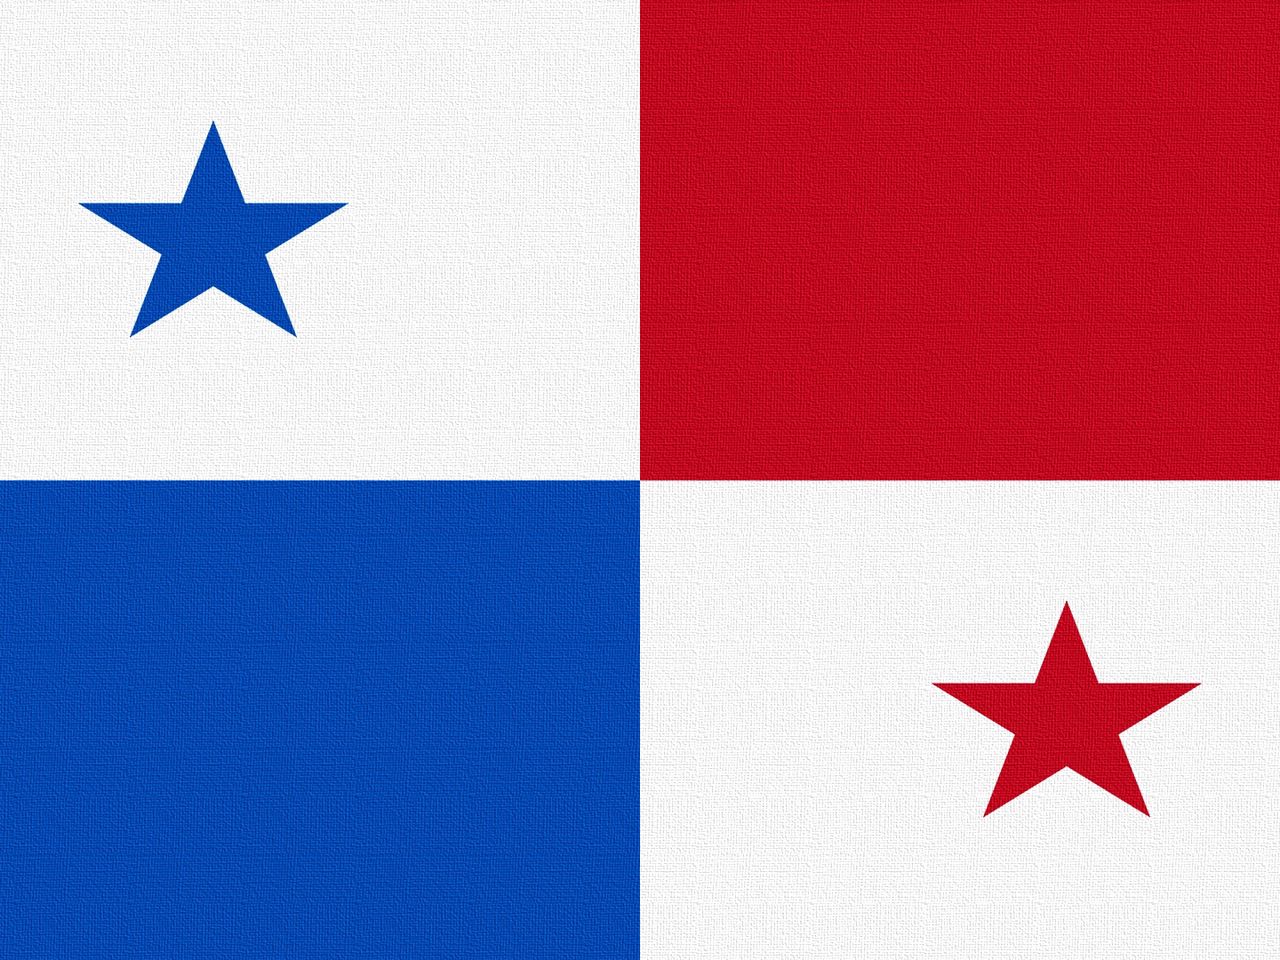 Панама Страна флаг. Флаг панамы. Флаг провинции Эррера Панама. Флаг синий белый красный со звездой.